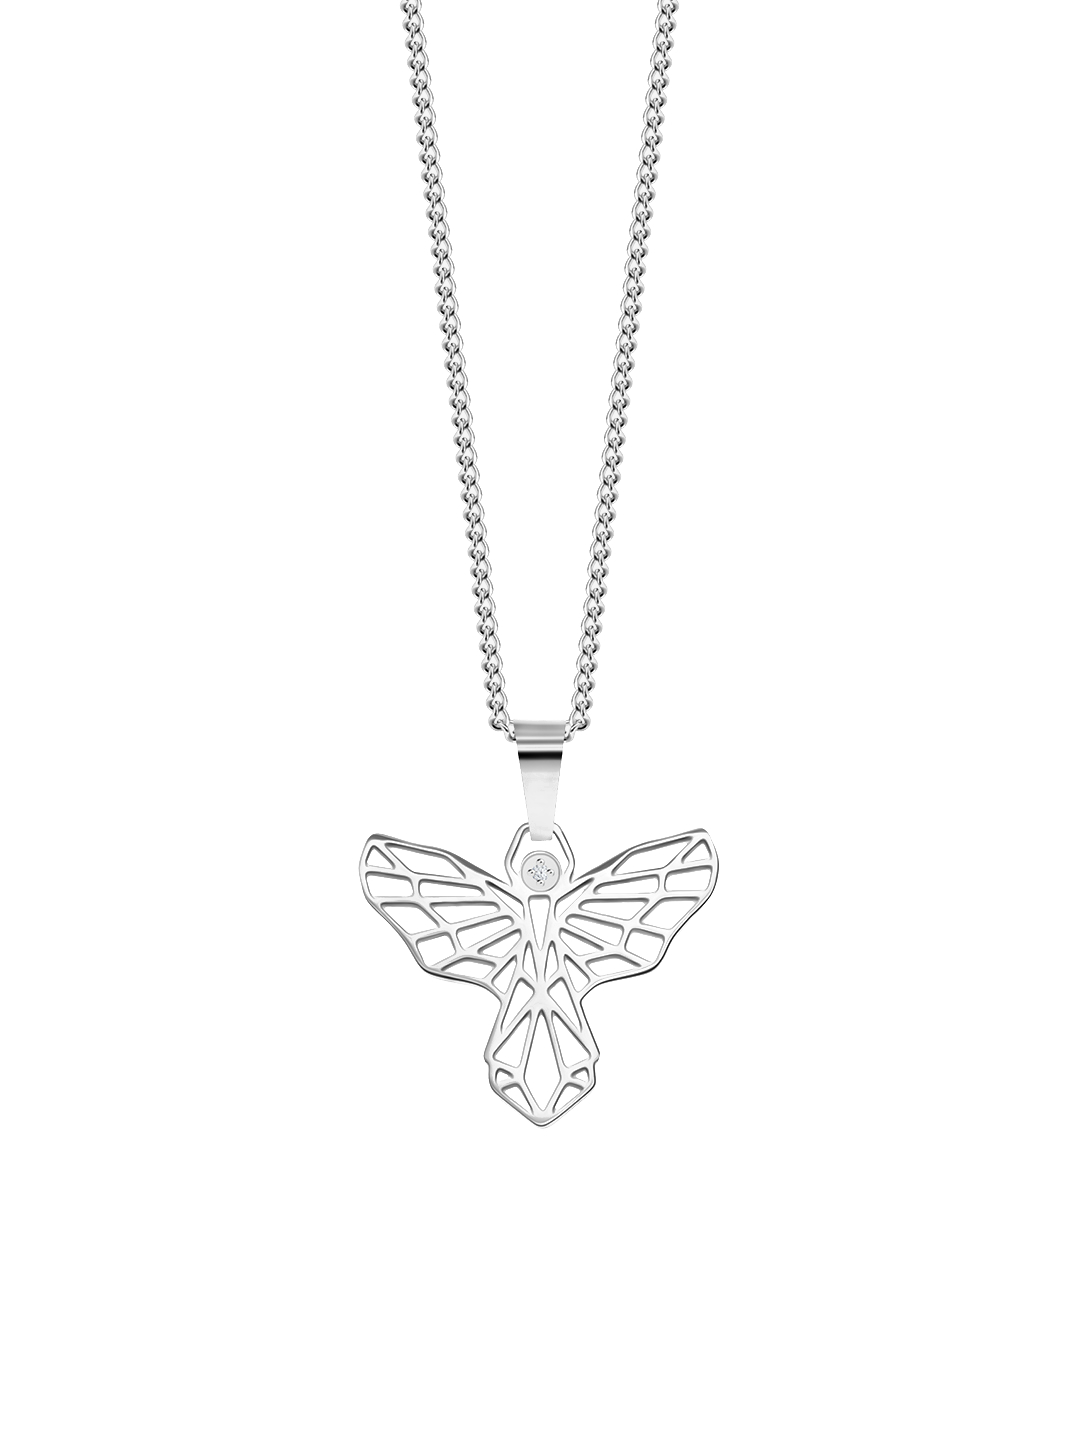 Preciosa Štýlový oceľový náhrdelník Origami Angel s kubickou zirkóniou Preciosa 7440 00.